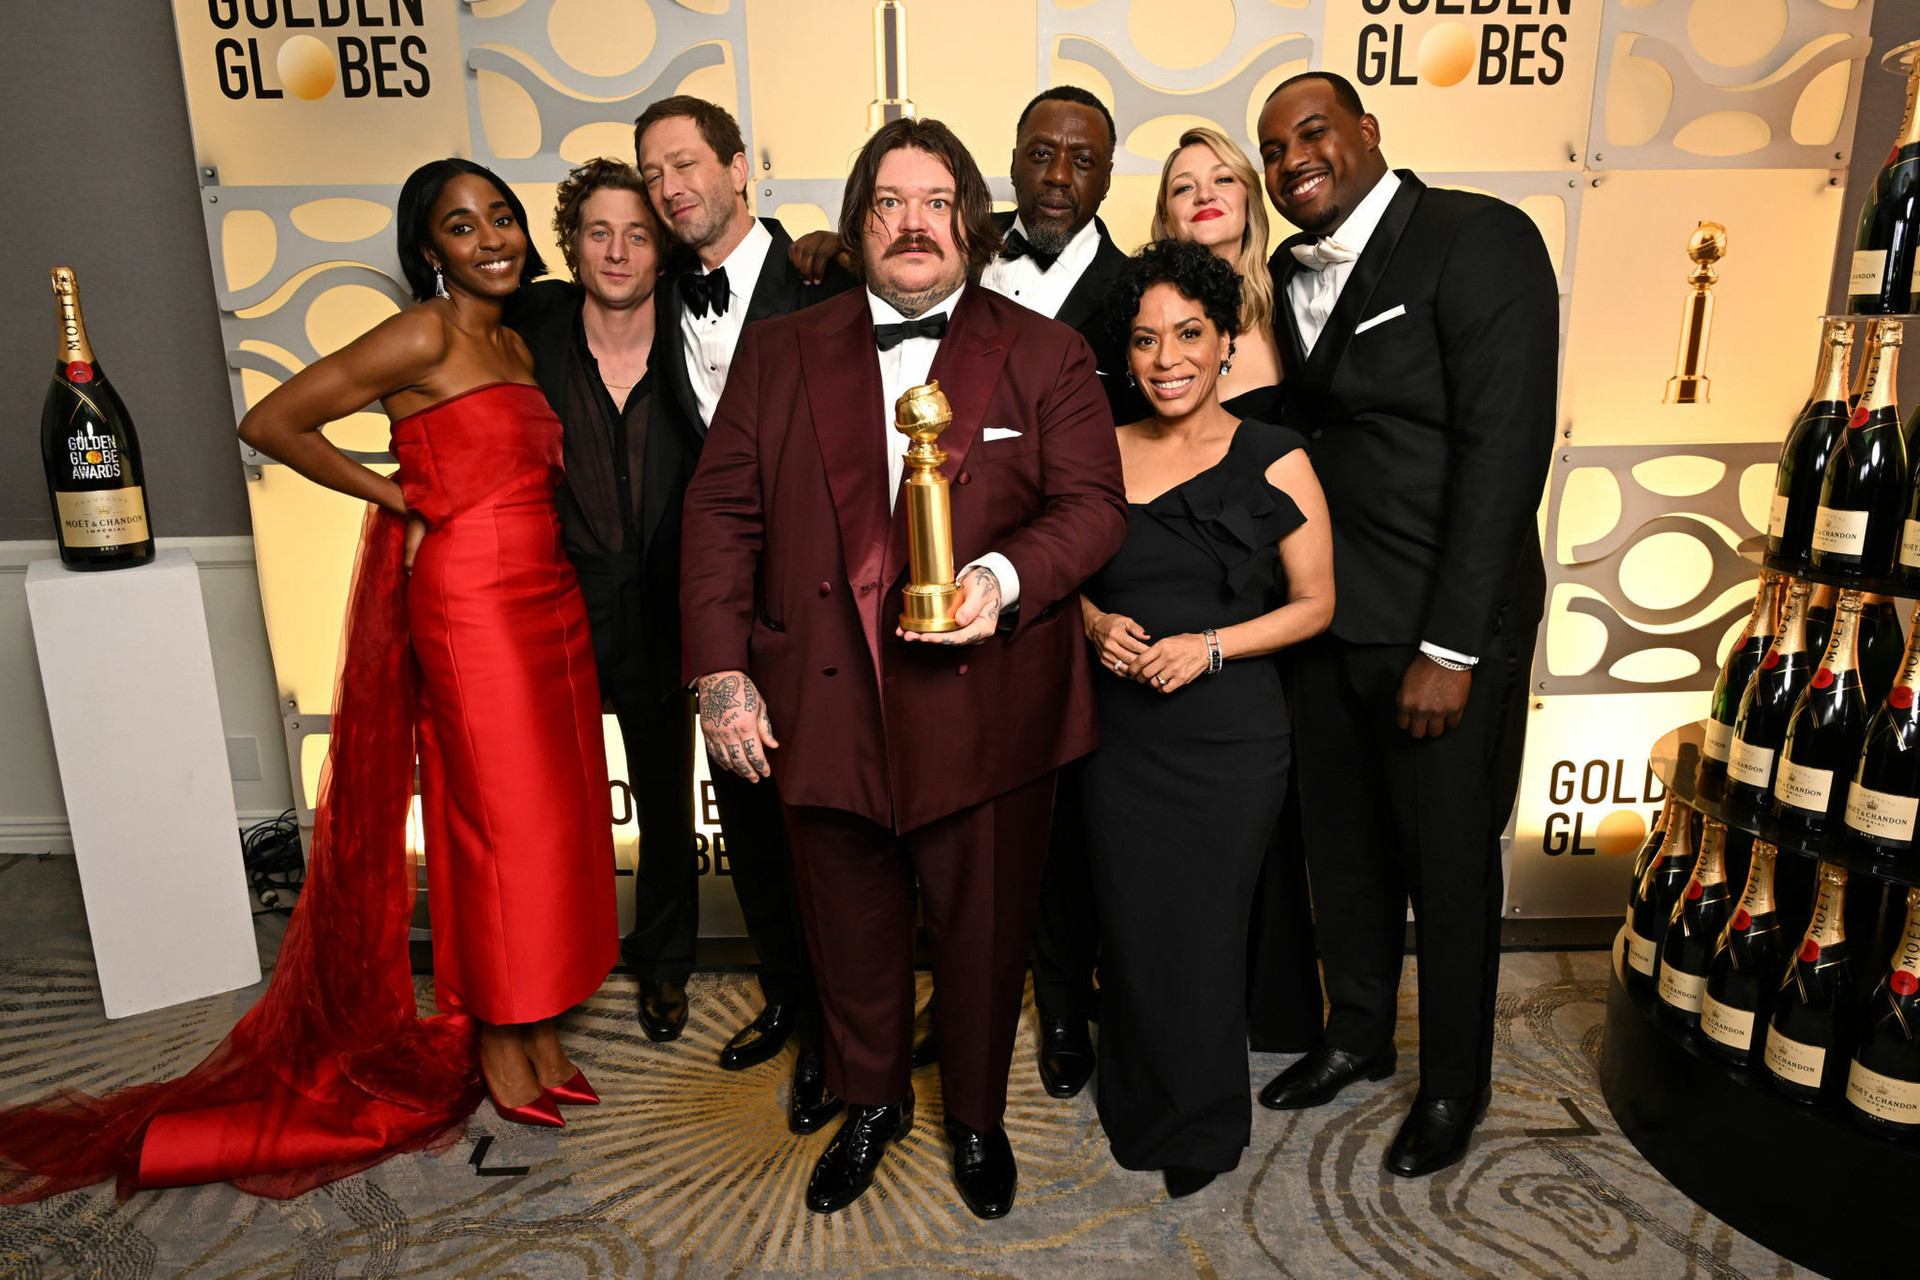 The Bear có Quả cầu vàng thứ 3, với chiến thắng ở hạng mục Phim hay nhất - Thể loại nhạc kịch hay hài (Best Television Series - Musical or Comedy).